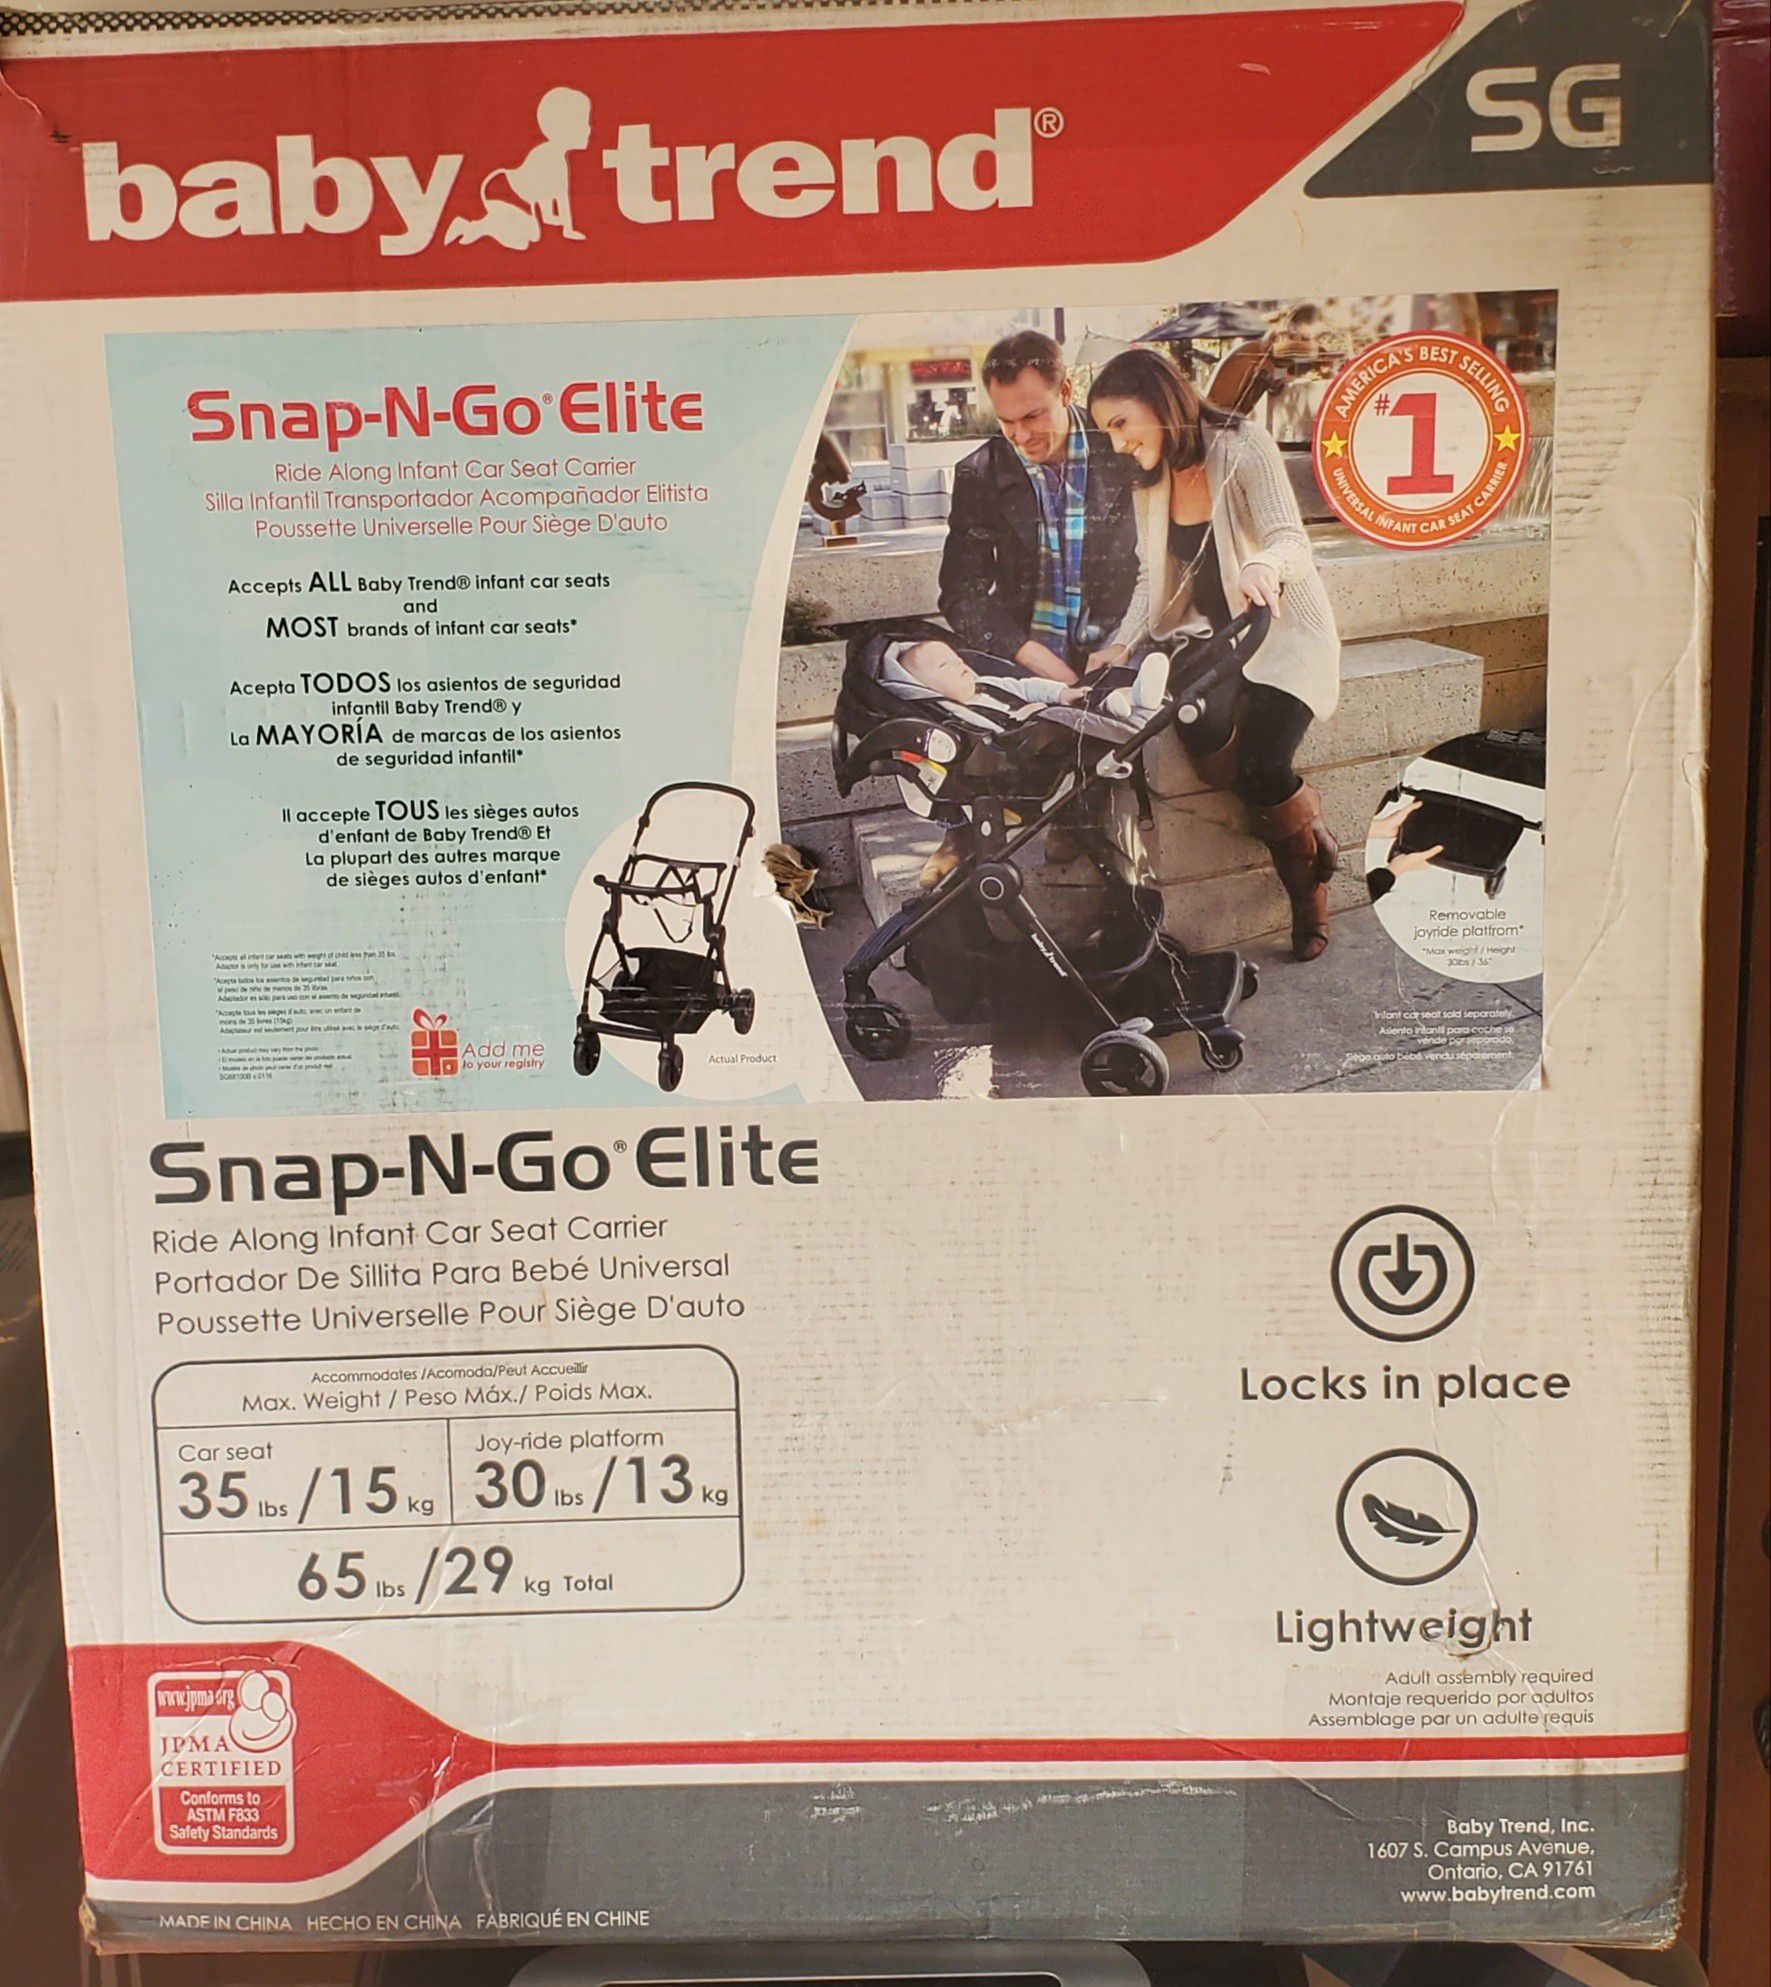 Baby Trend Snap-N-Go Elite